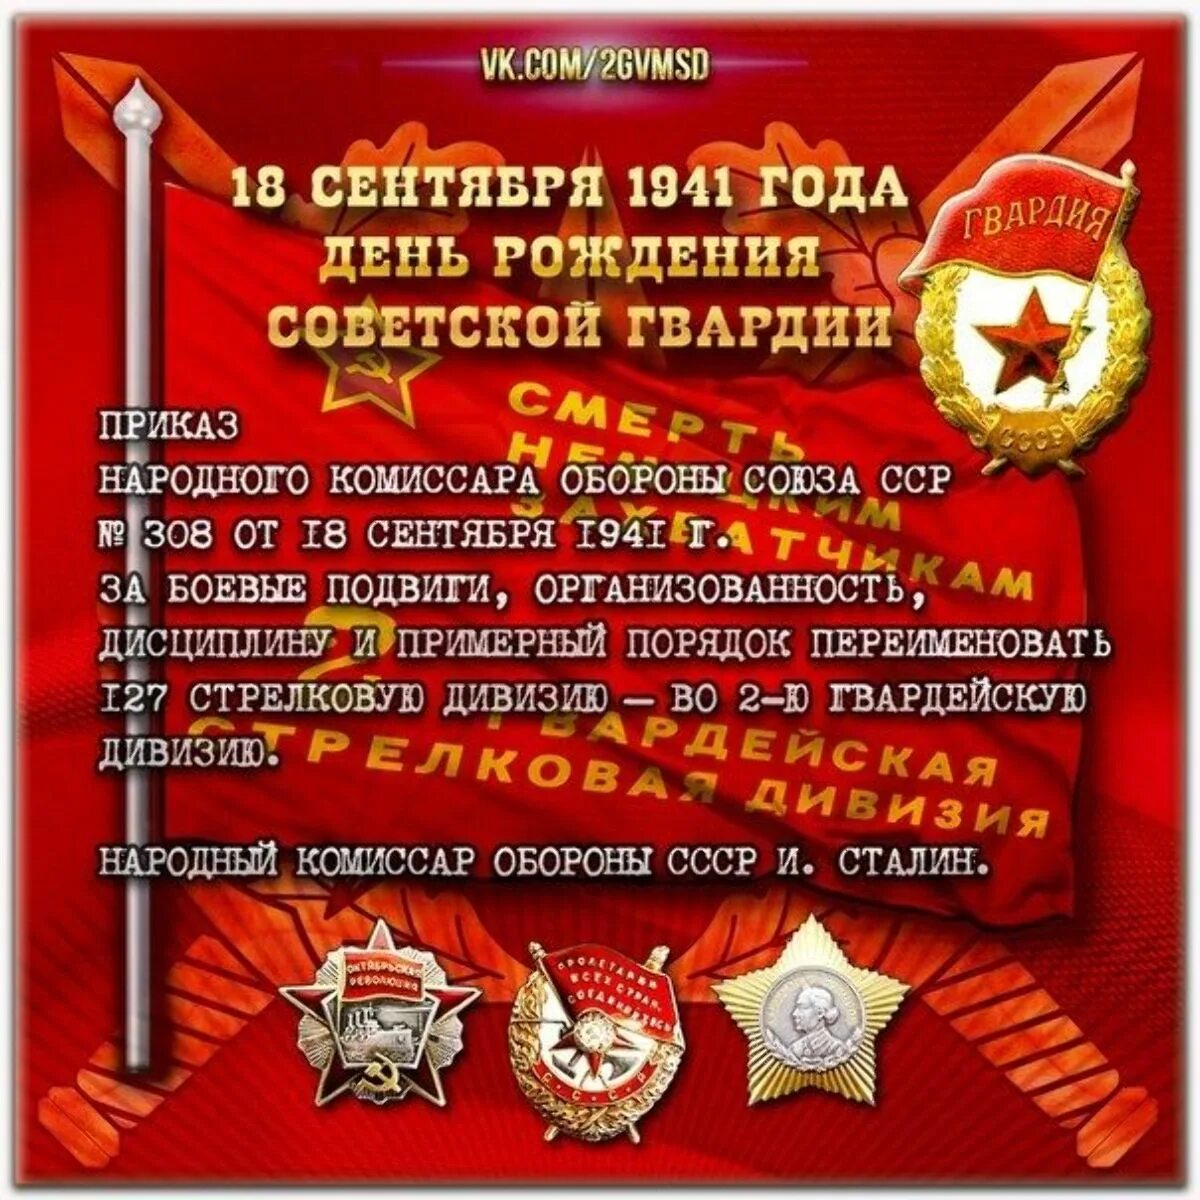 Советской гвардии 1. 18 Сентября 1941 года день рождения Советской гвардии. День рождения Советской гвардии. 18 Сентября день рождения Советской гвардии. С днем Советской гвардии открытка.